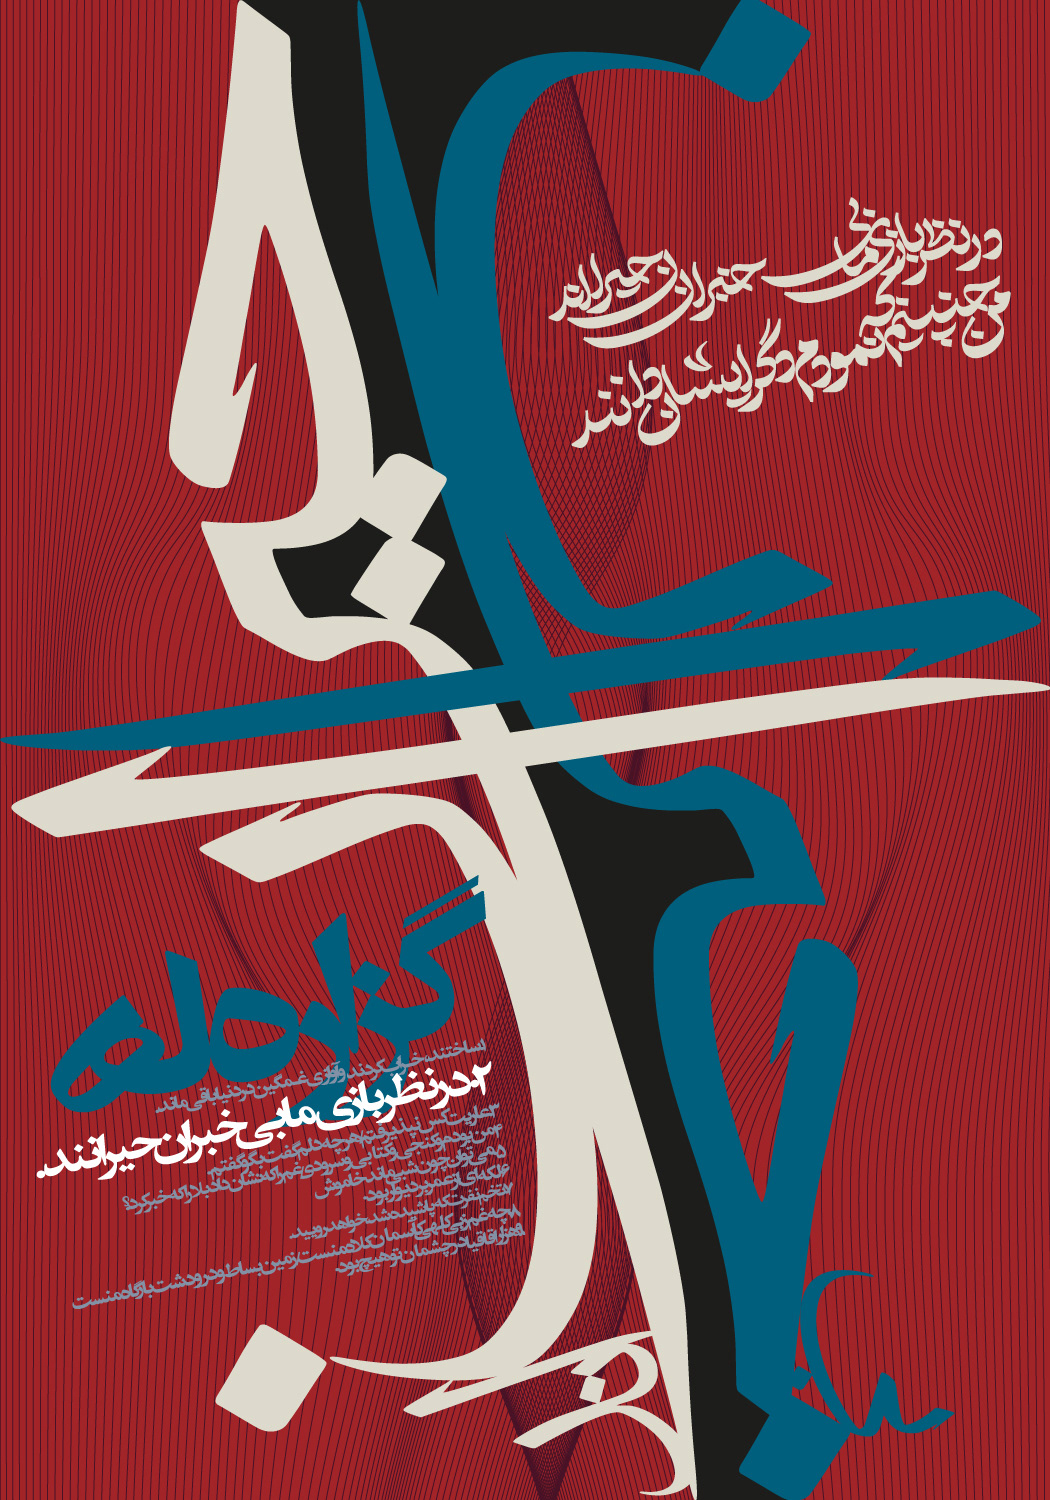 graphic art graphic design  Graphic Designer Iran persian poster type Typographic Design typographic poster typography  